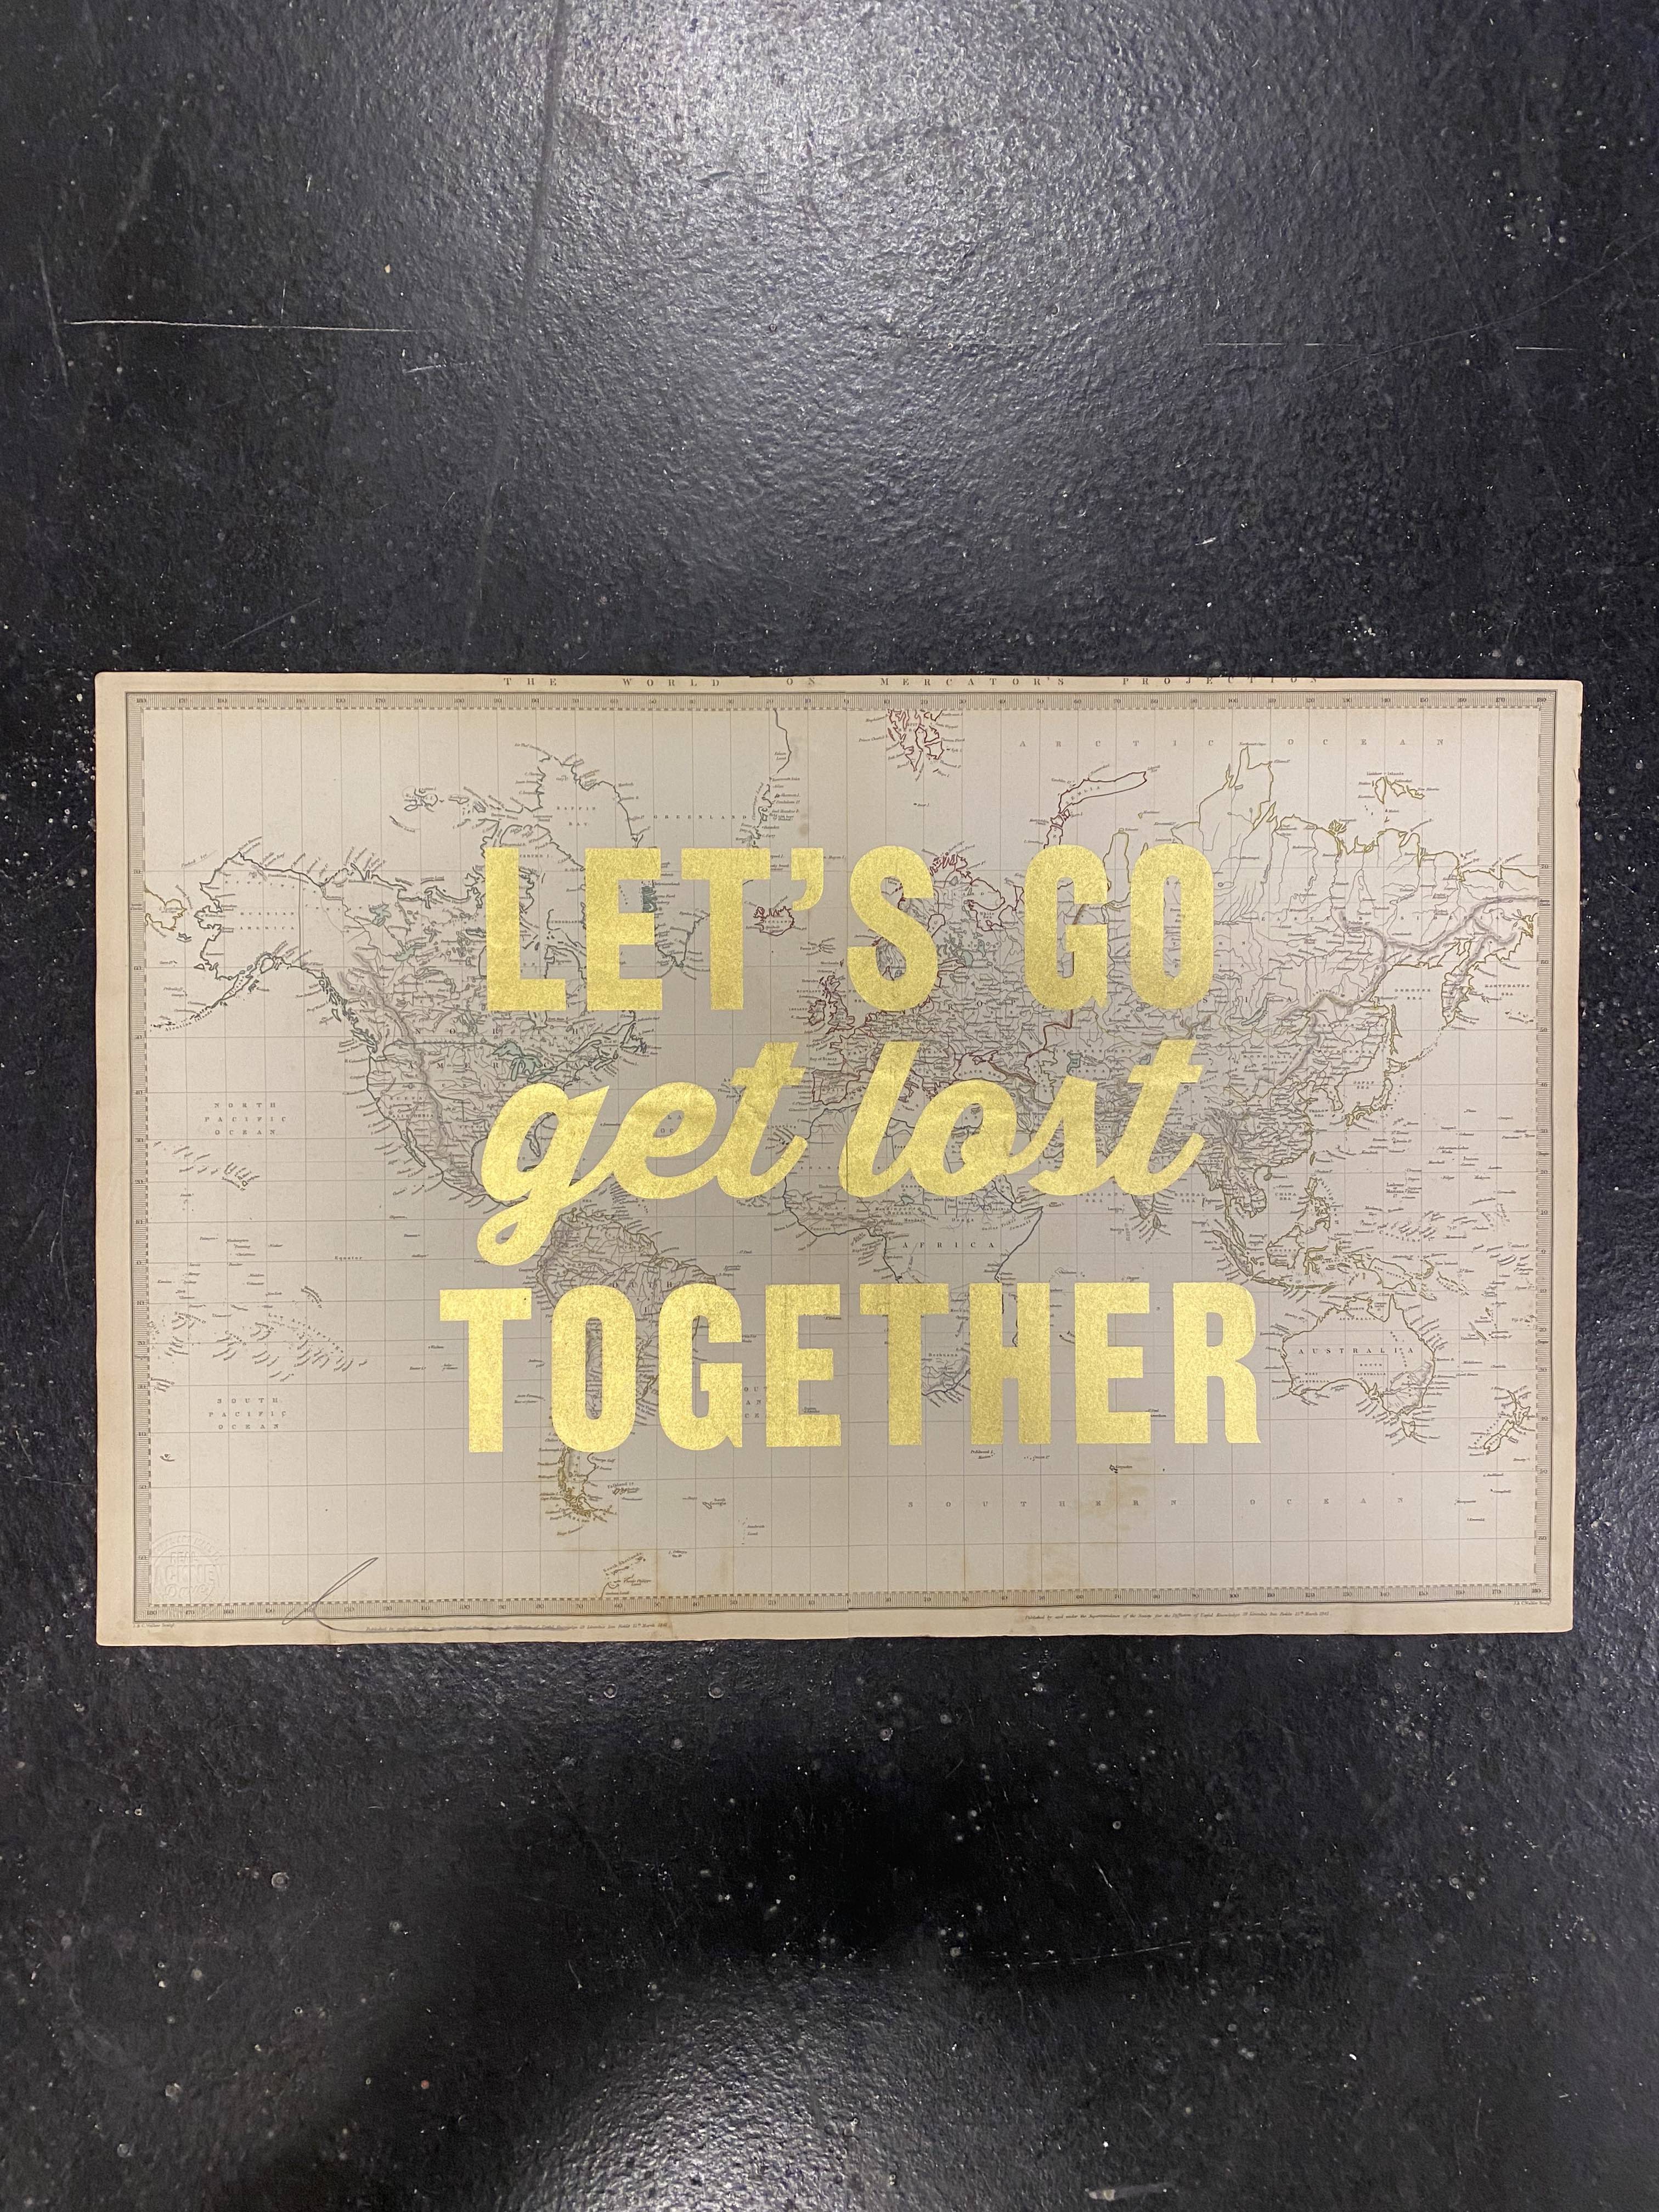 LET’S GO GET LOST TOGETHER-GOLD